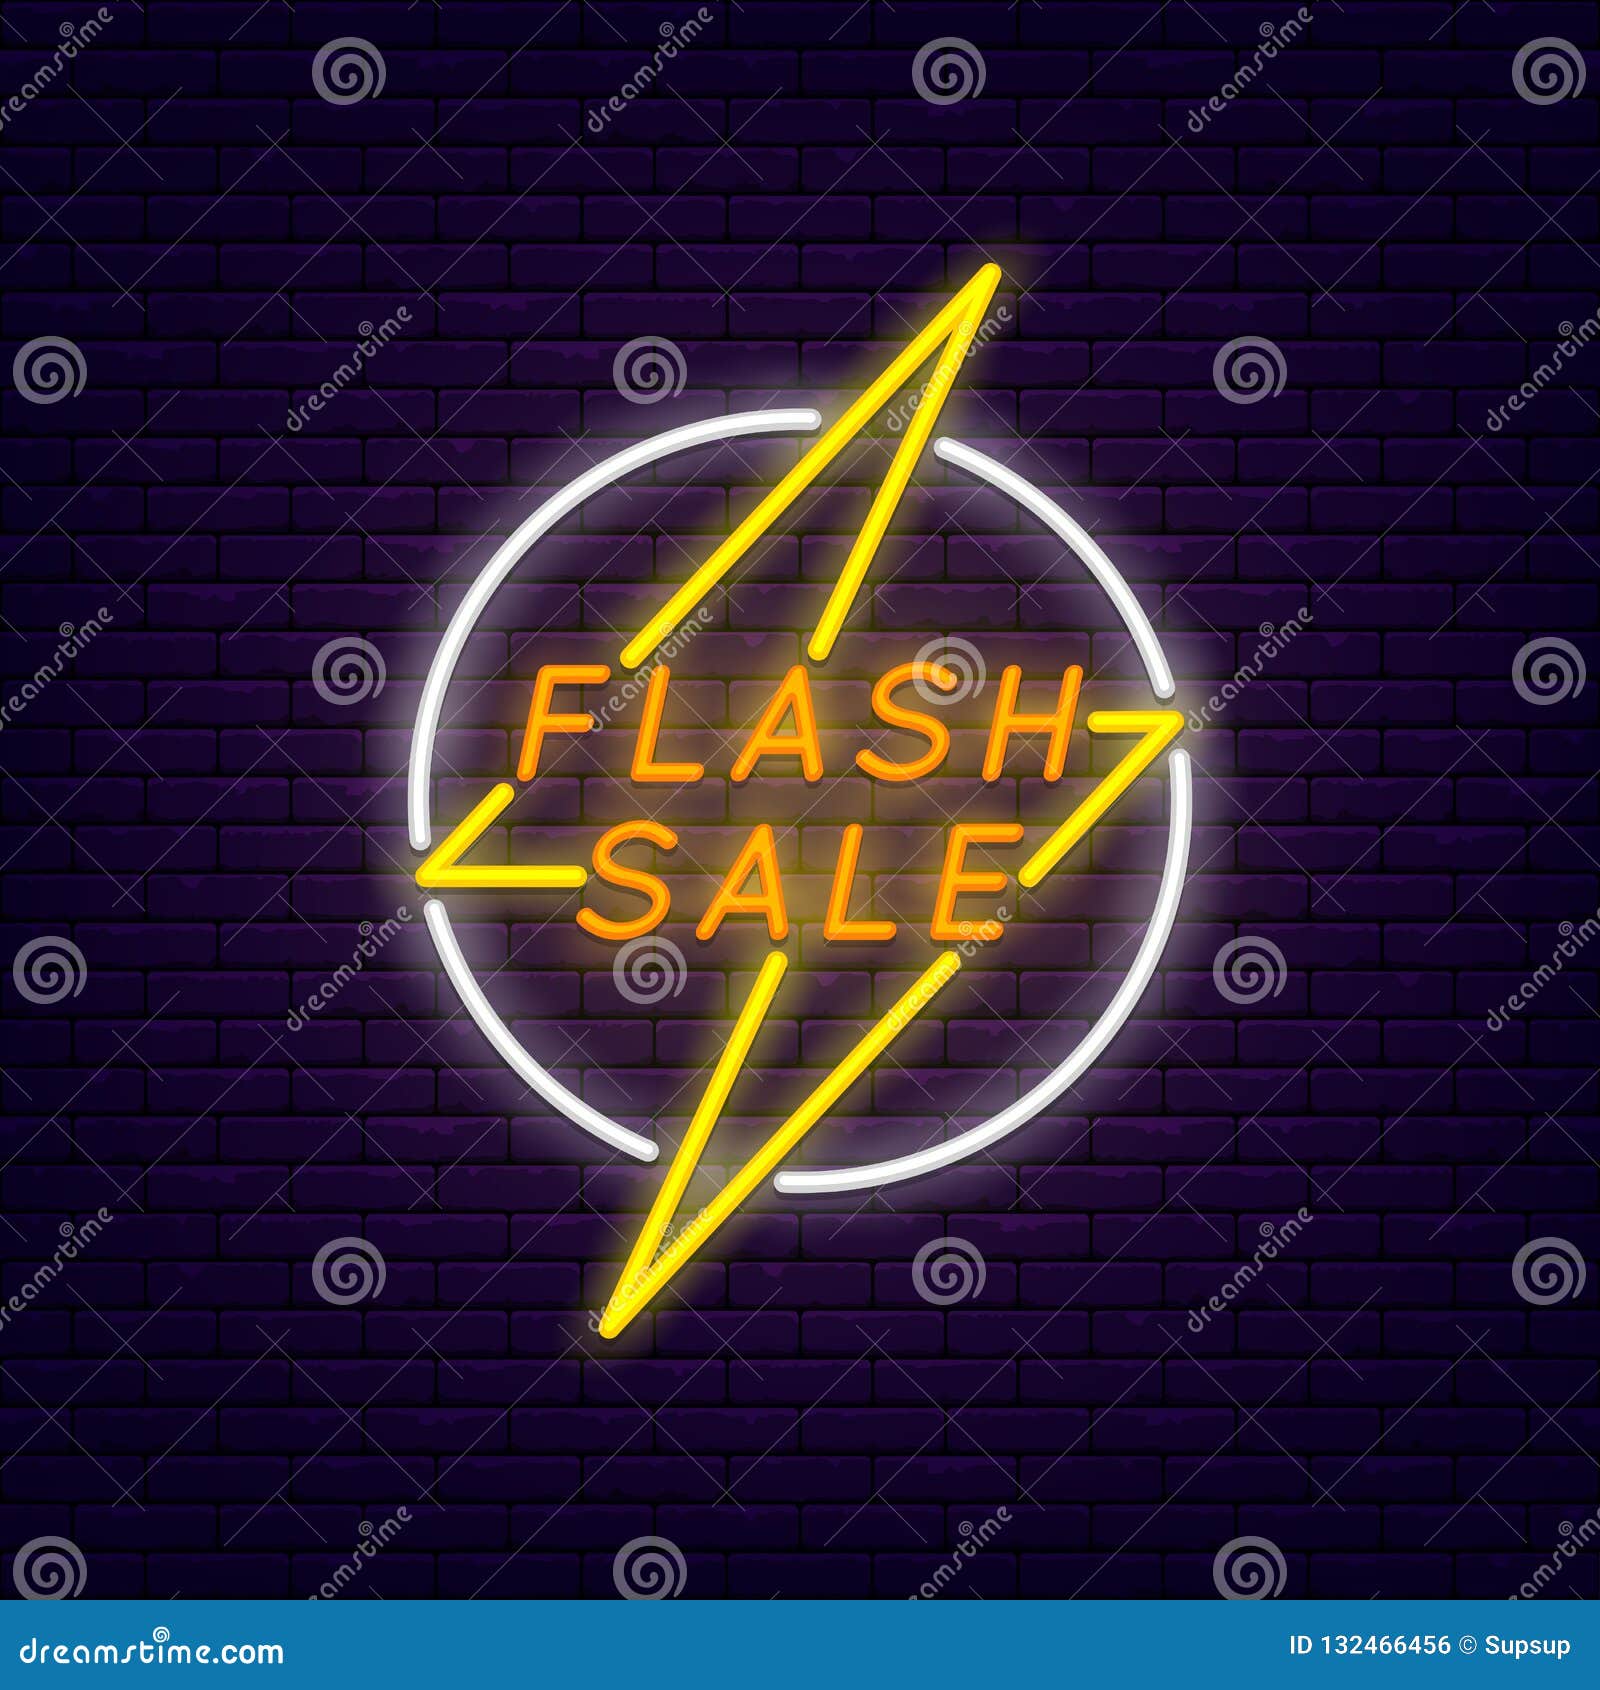 flash sale banner